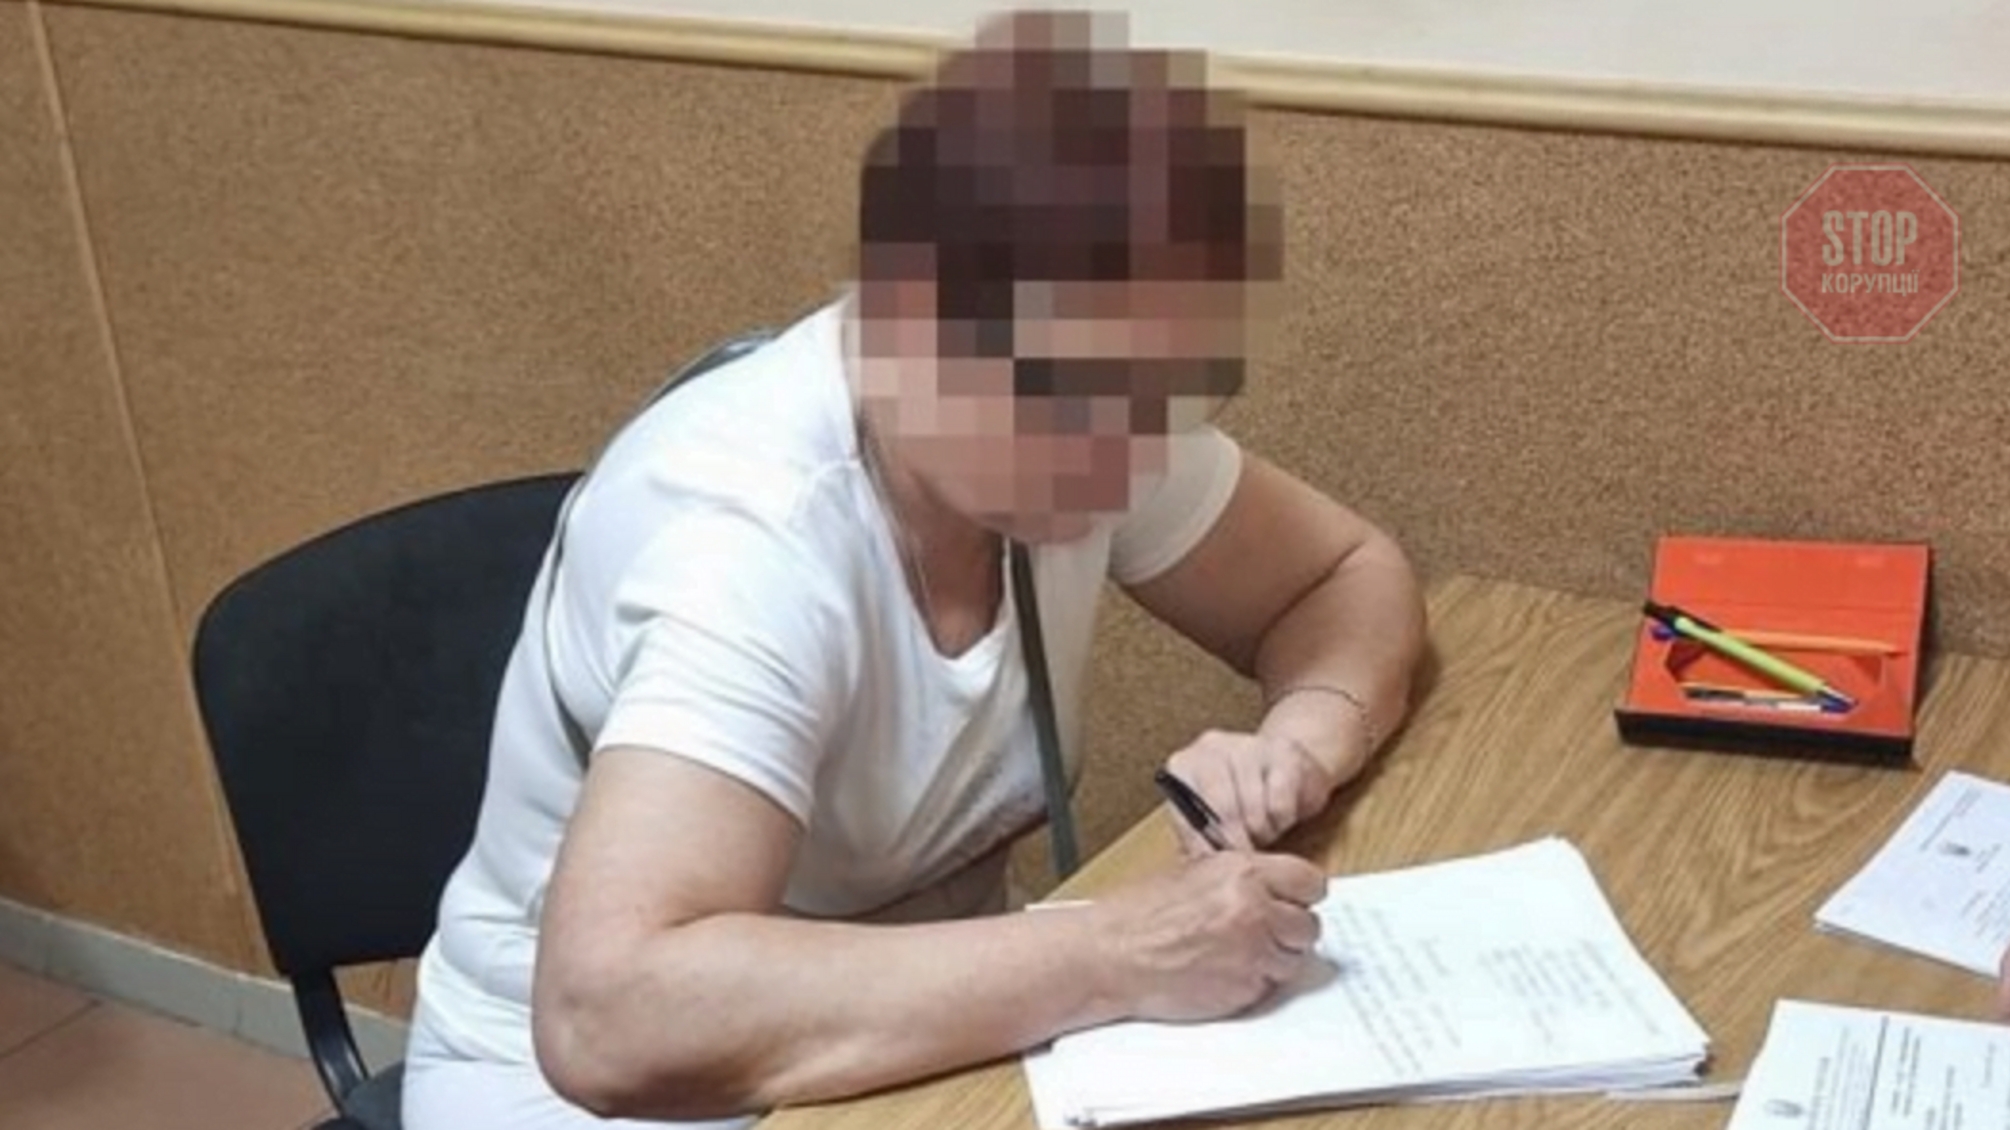 Скрывалась в РФ: силовики задержали организатора 'референдума' на Луганщине